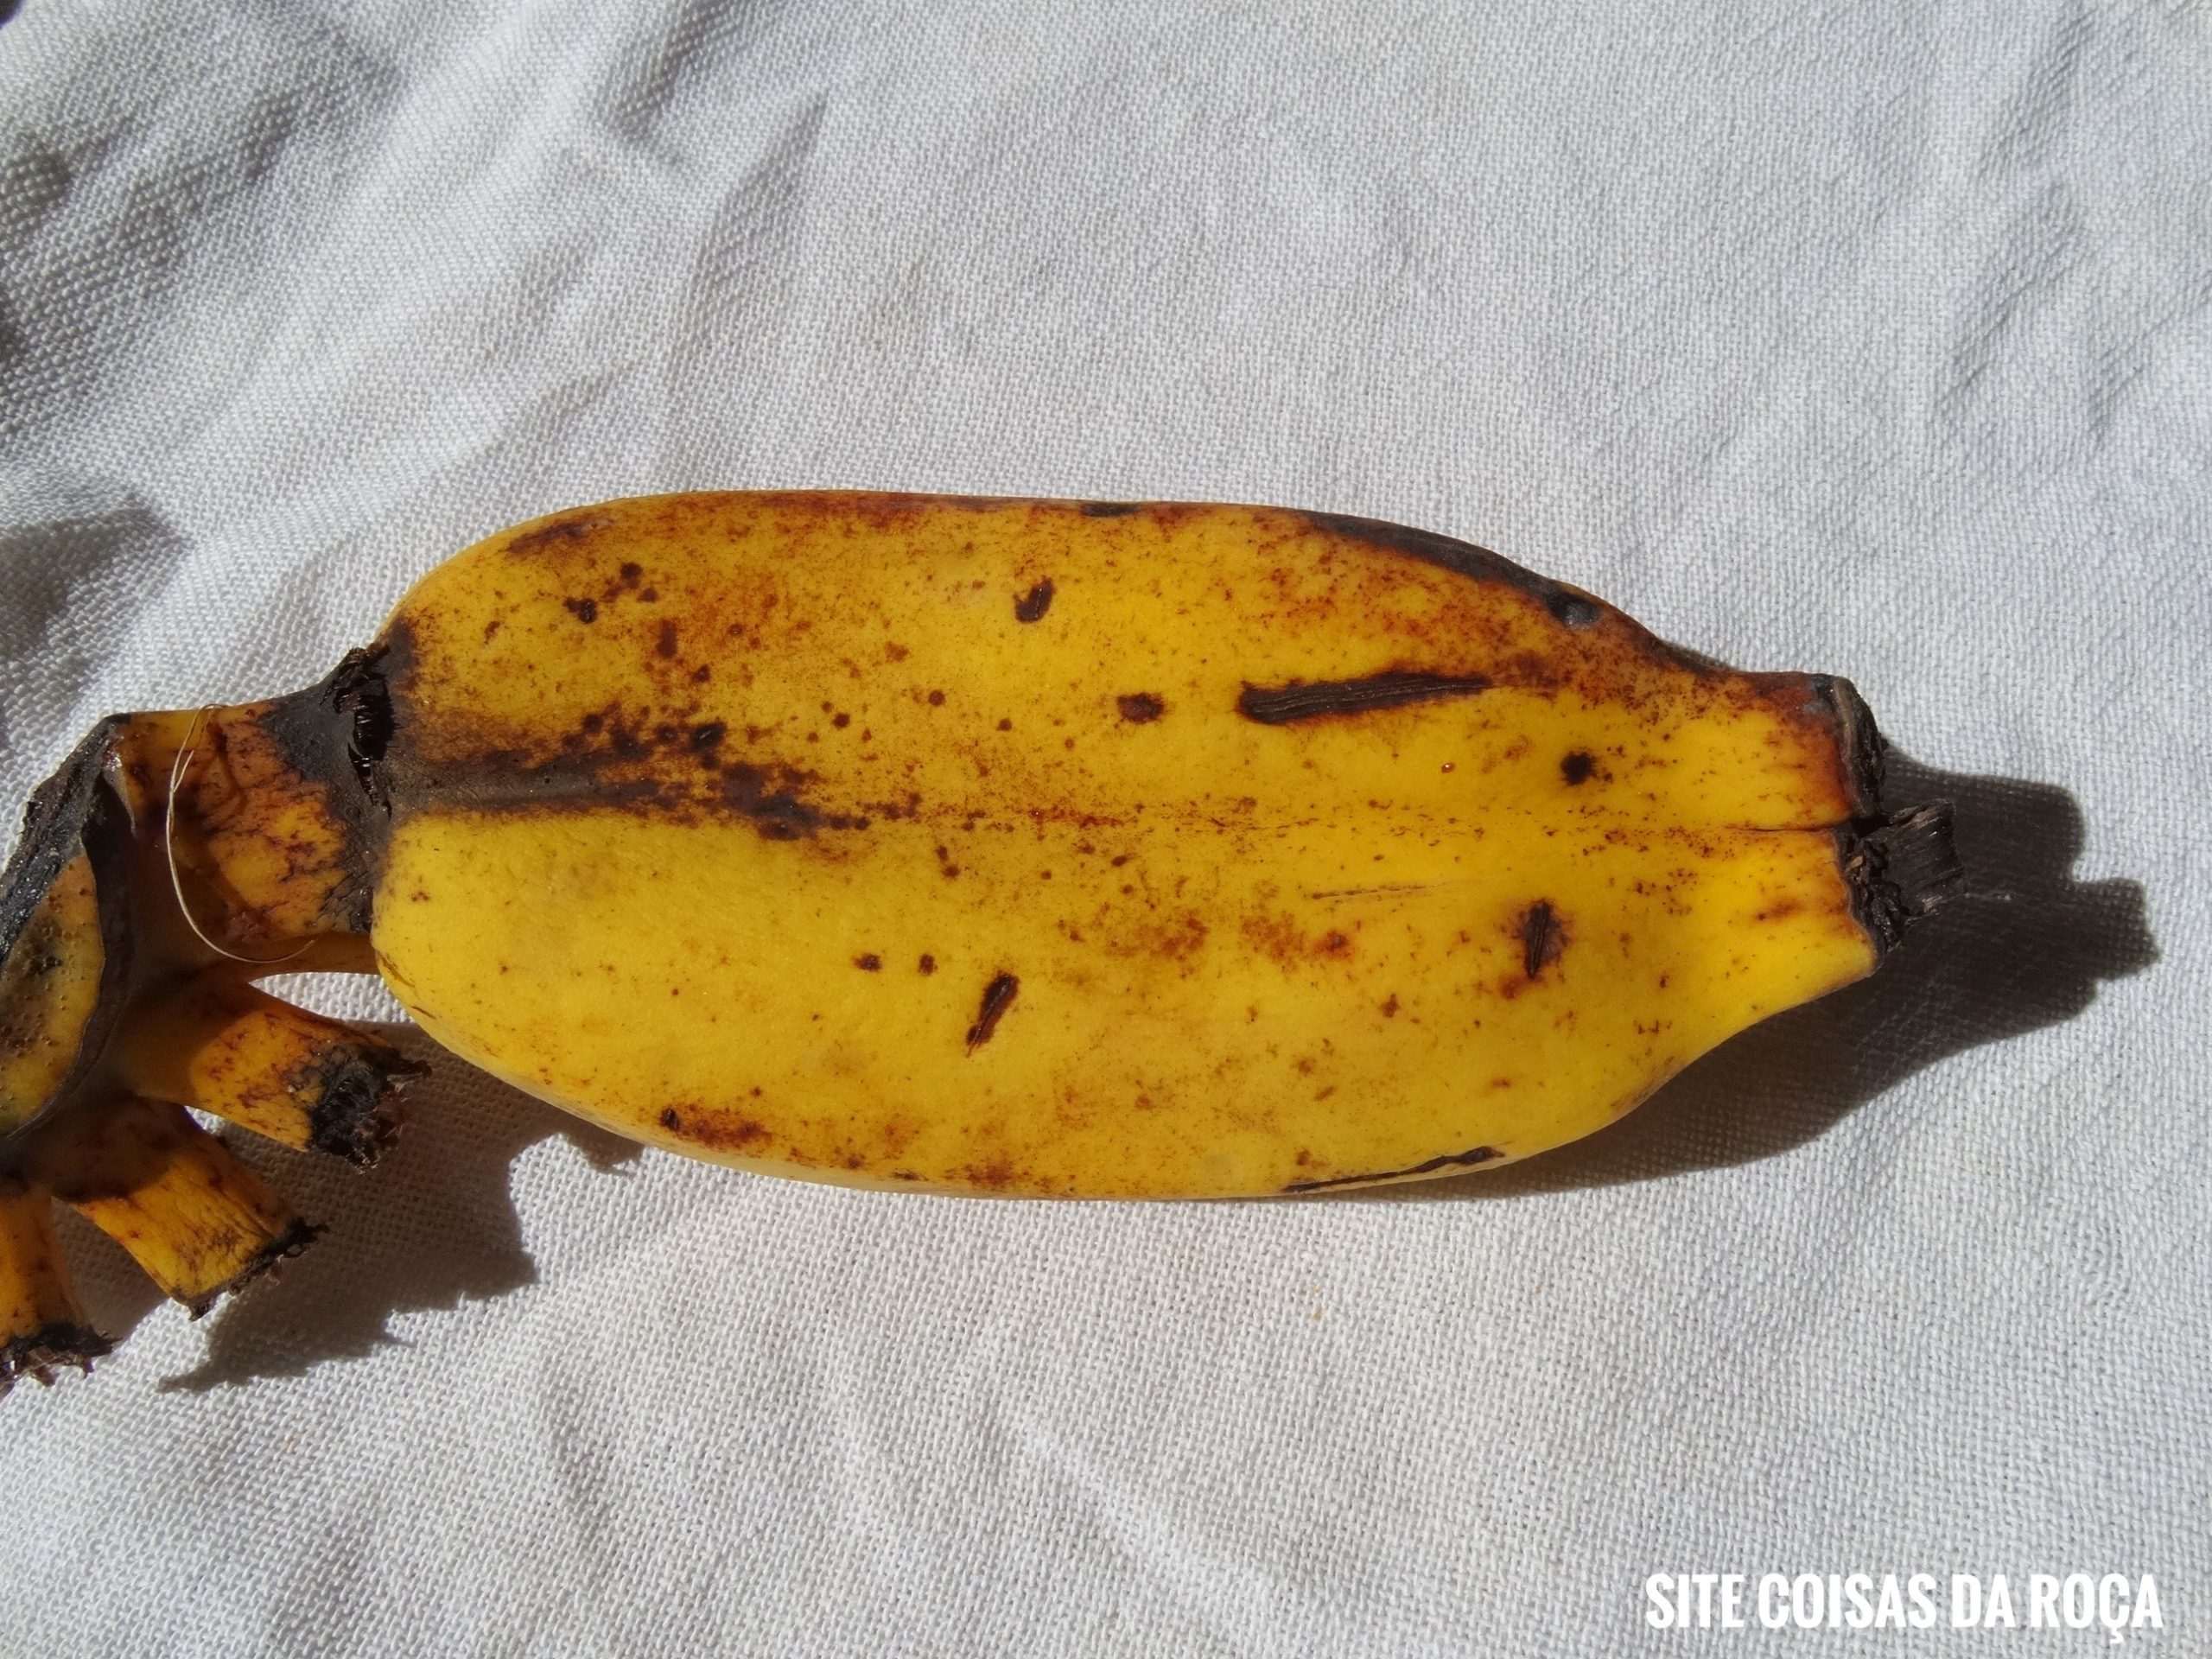 Banana gêmea (imagem: Evandro Marques)